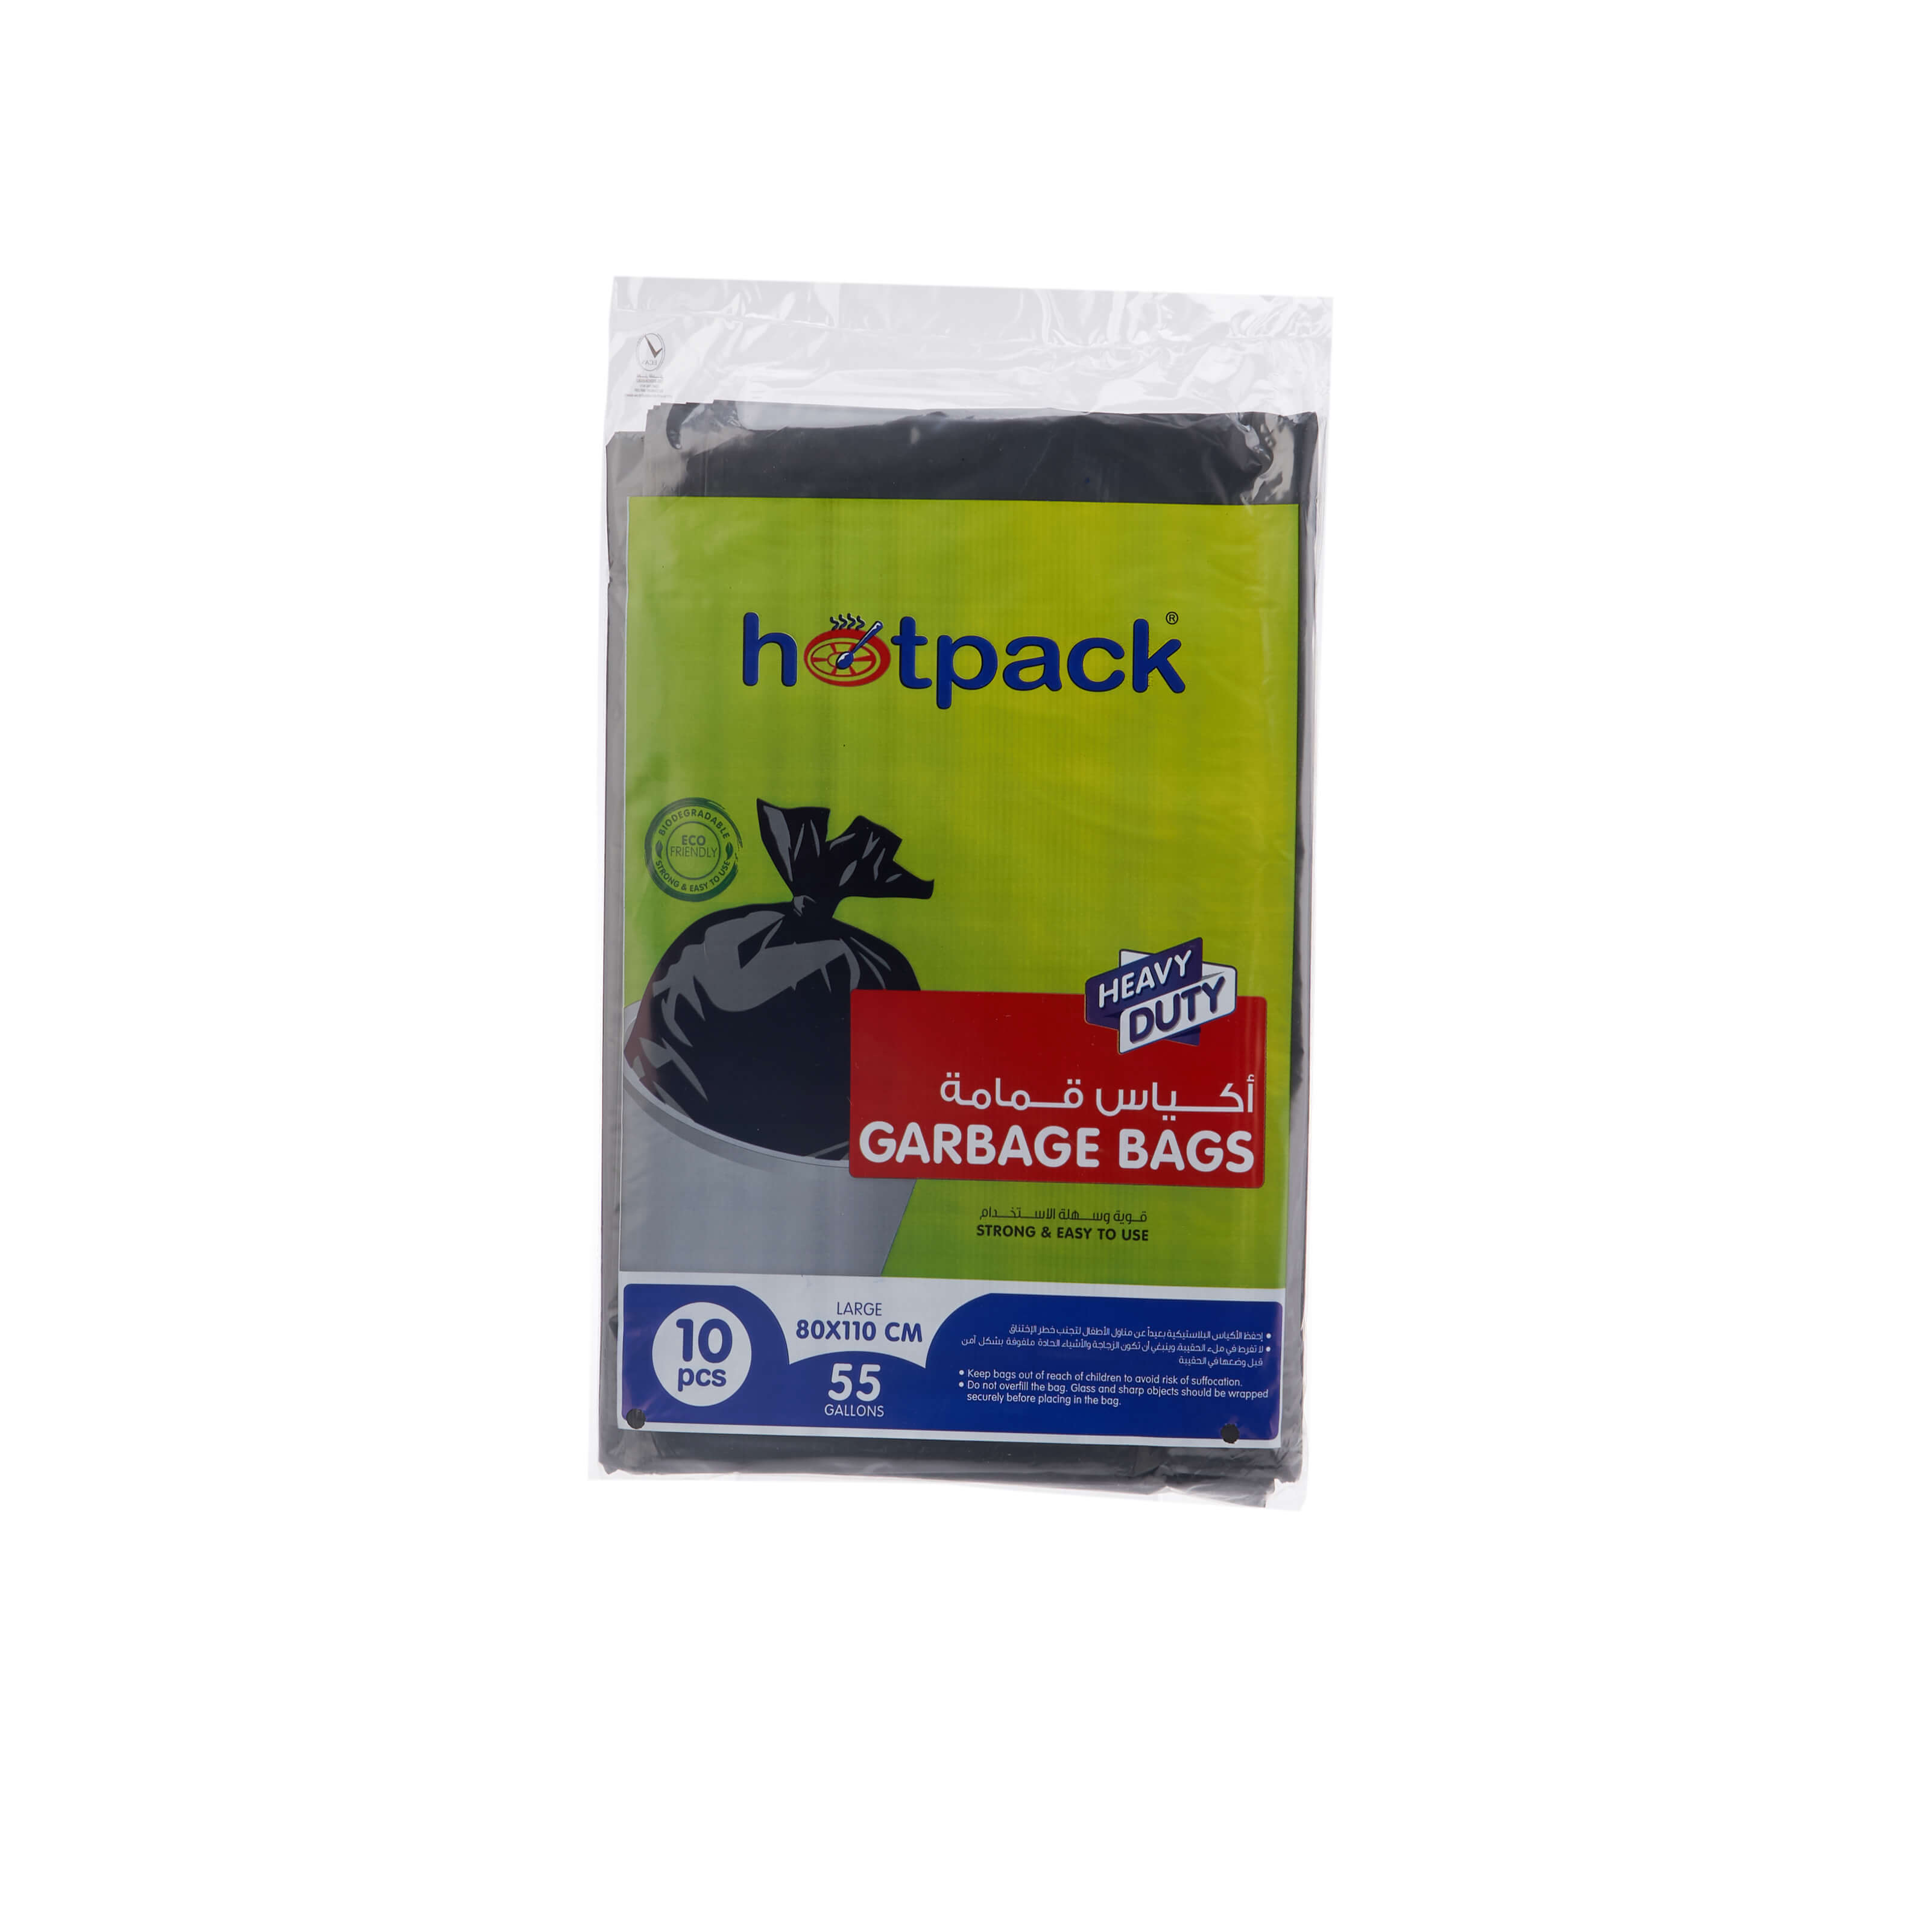 Heavy Duty Black Garbage Bag - hotpackwebstore.com